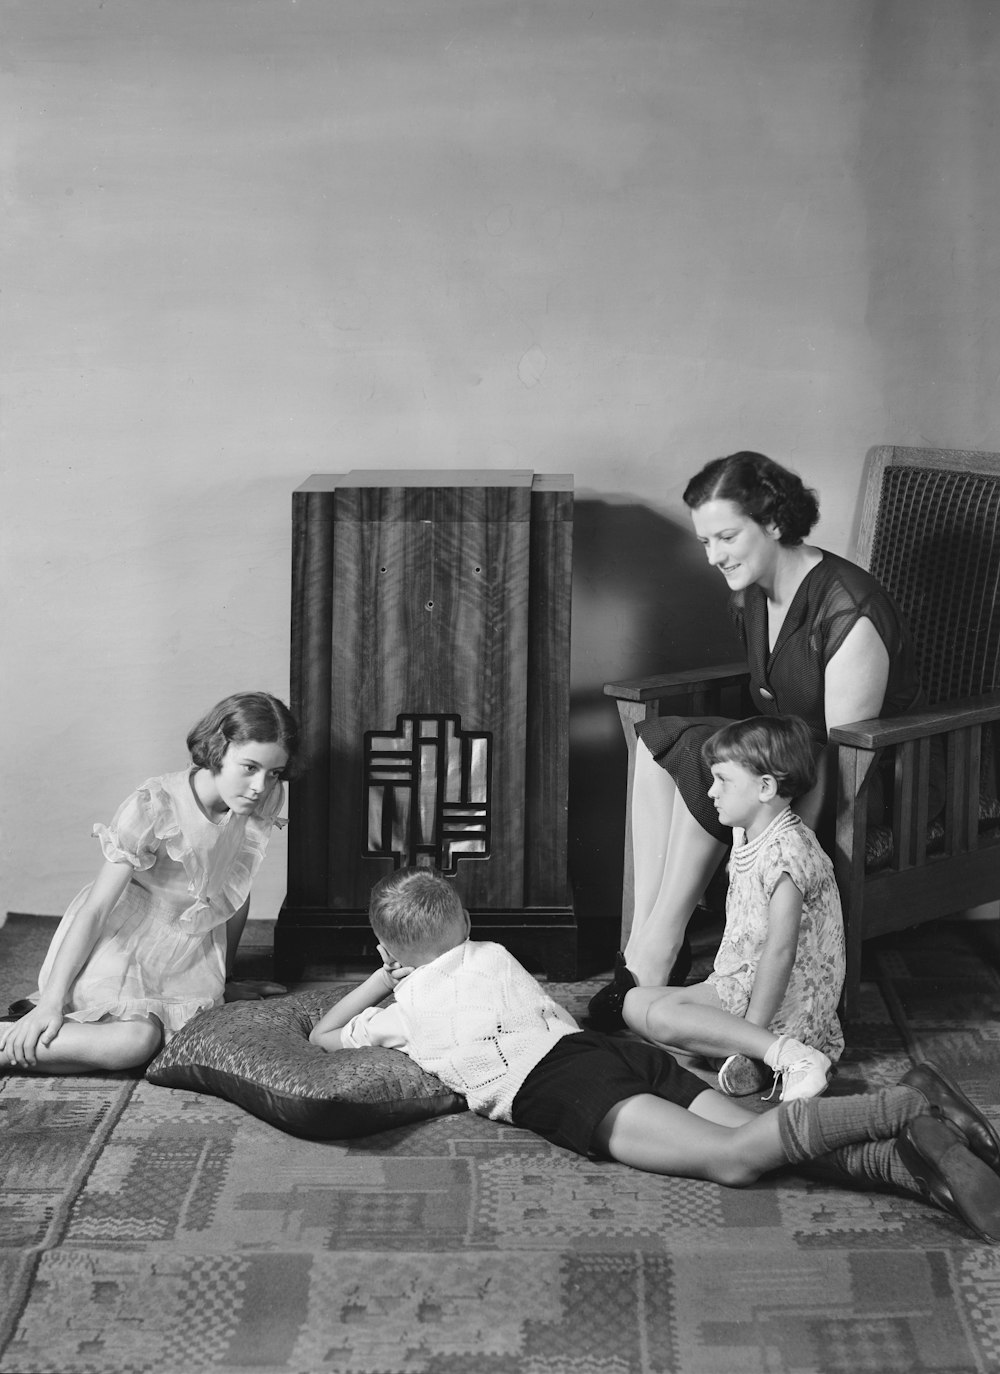 Una foto en blanco y negro de una mujer sentada en una cama con dos niños